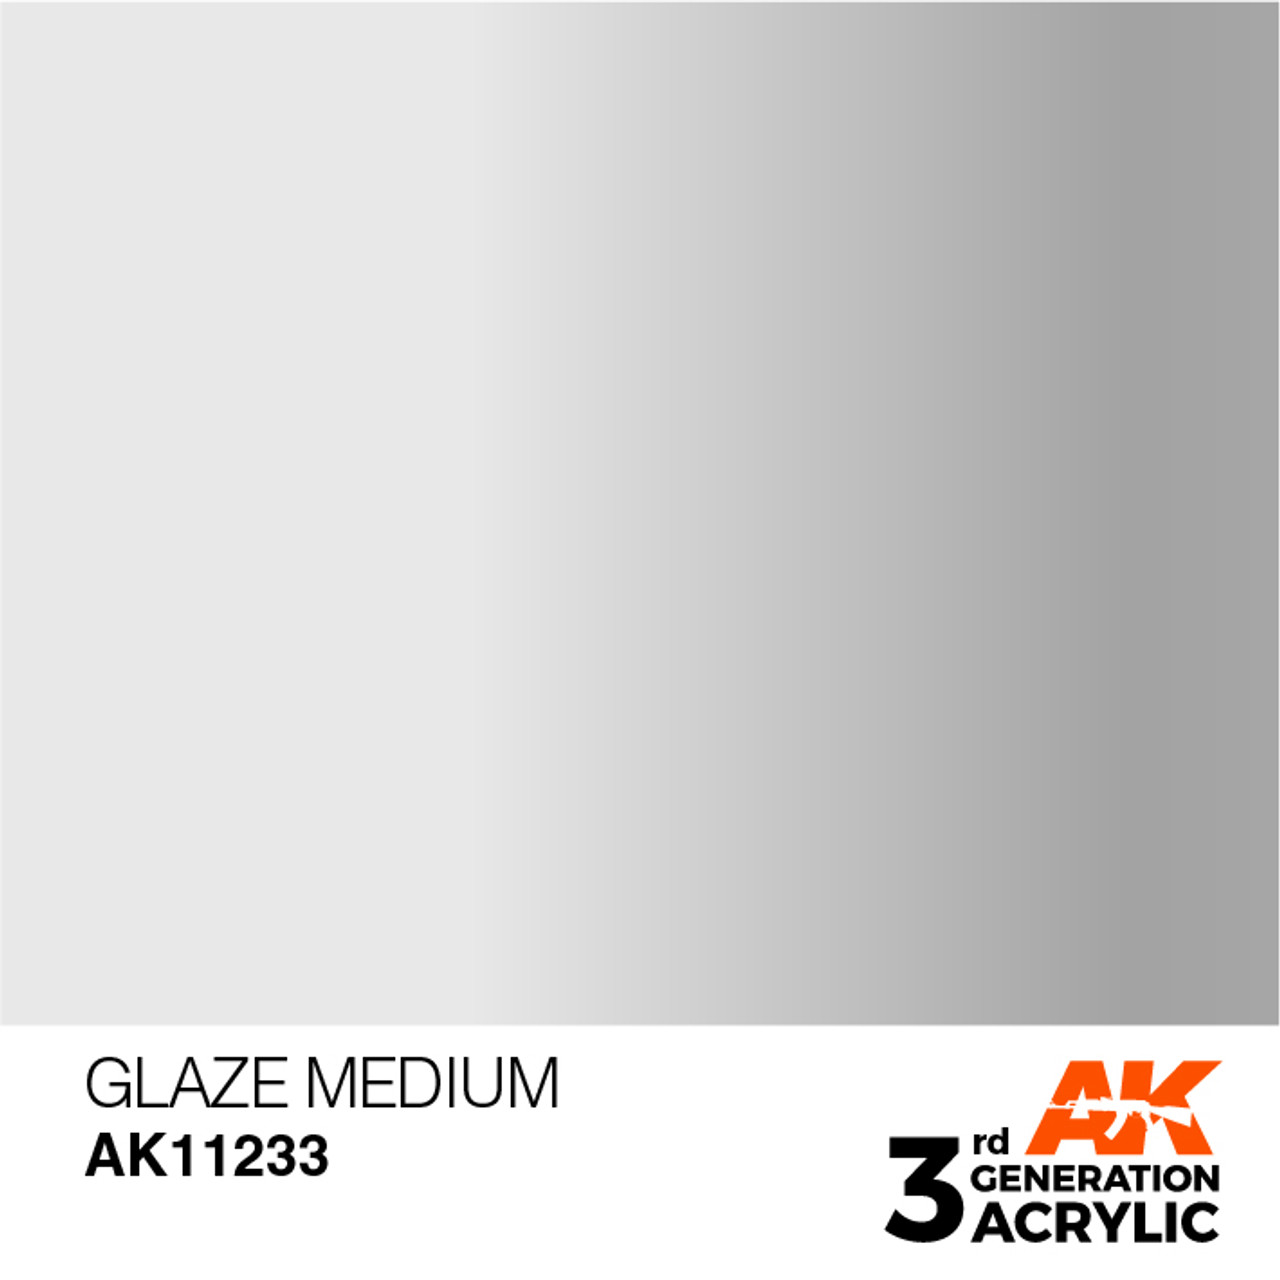 Glaze Medium - AK 3Gen Acrylic